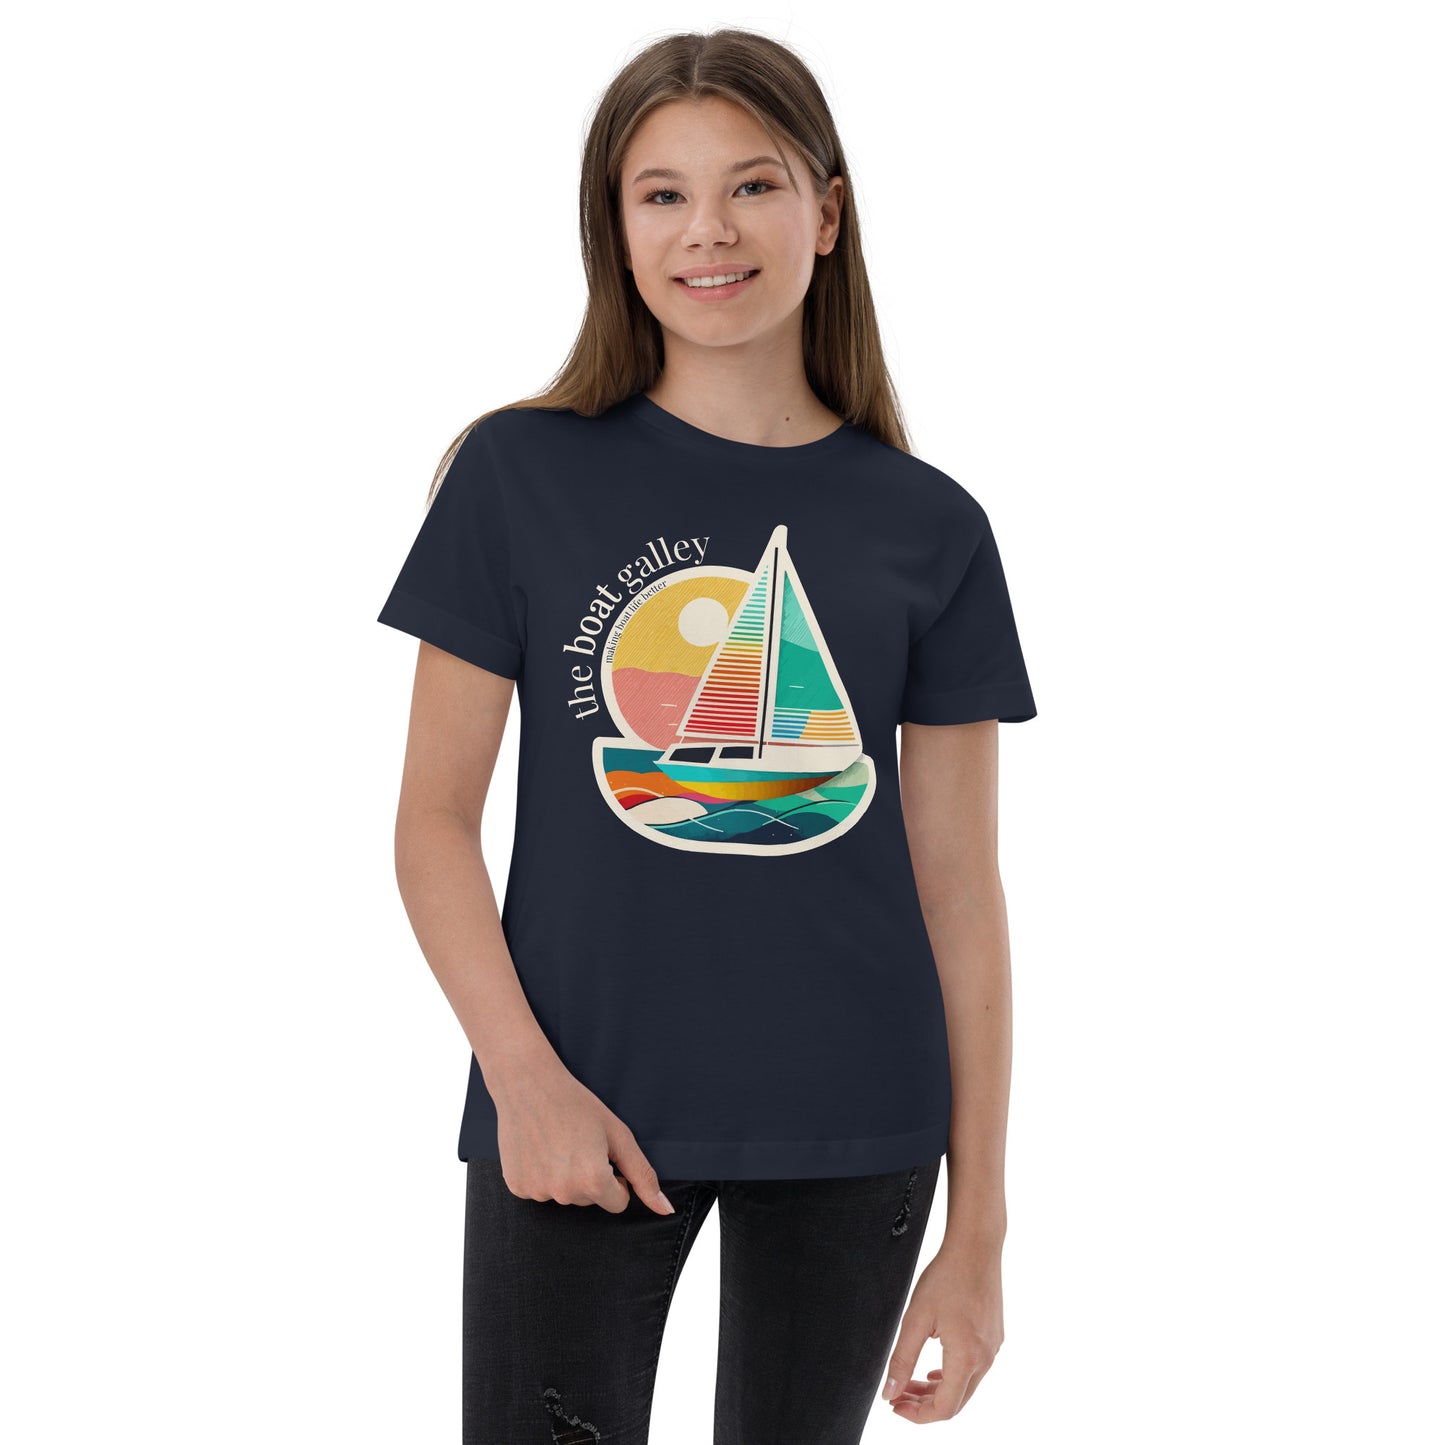 Youth Sailboat T-shirt